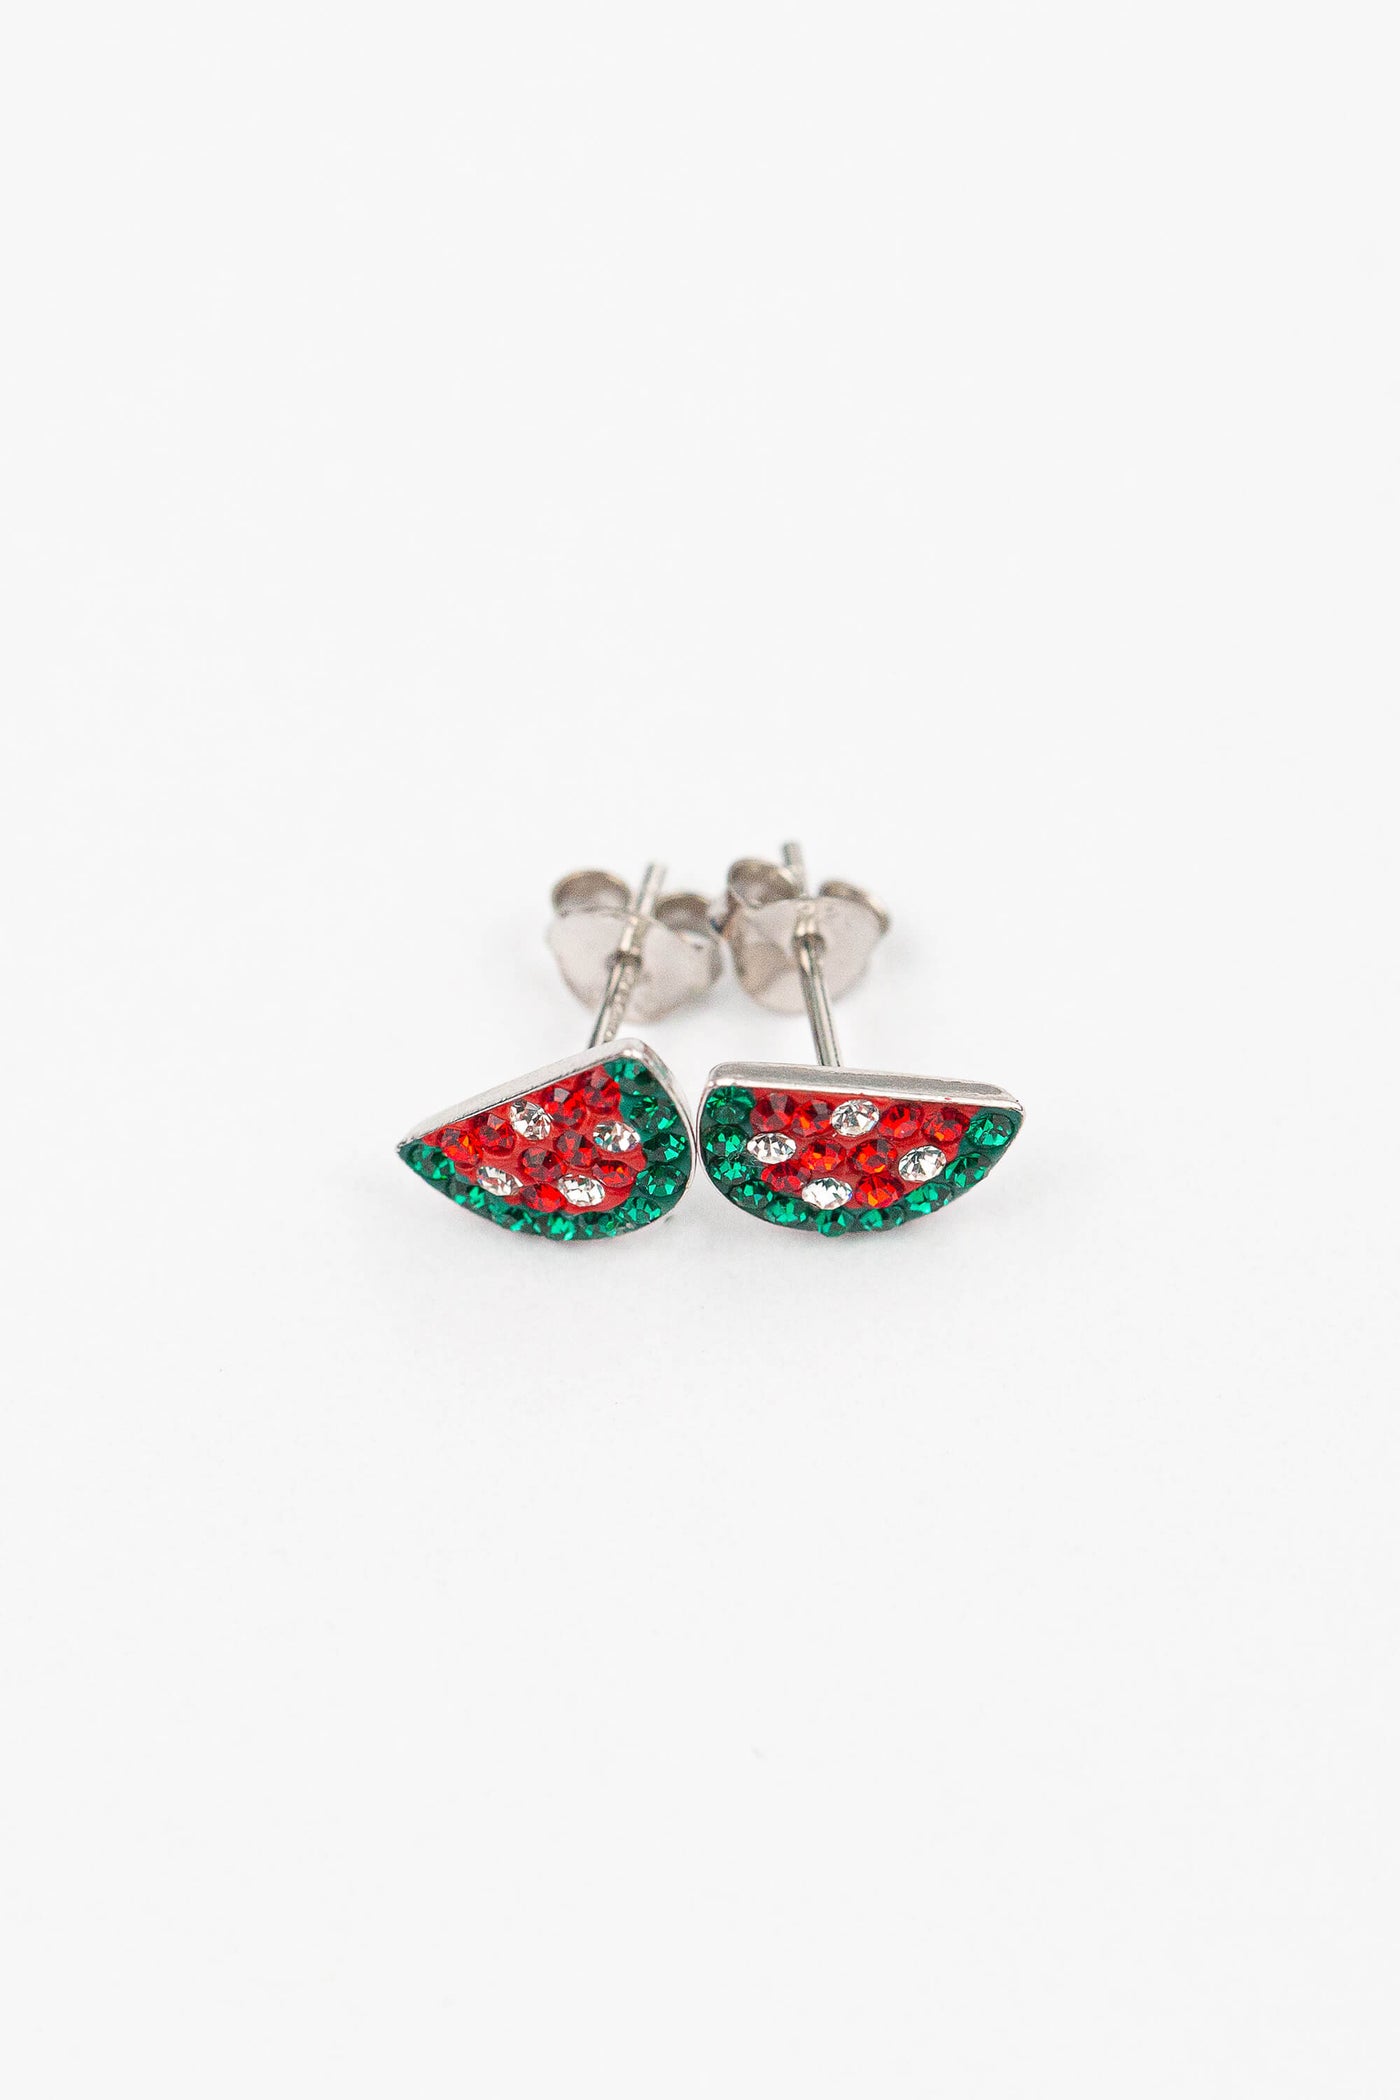 Watermelon Crystal Stud Earrings | sister stud earrings, for kids, children's jewelry, kid's jewelry, best friend